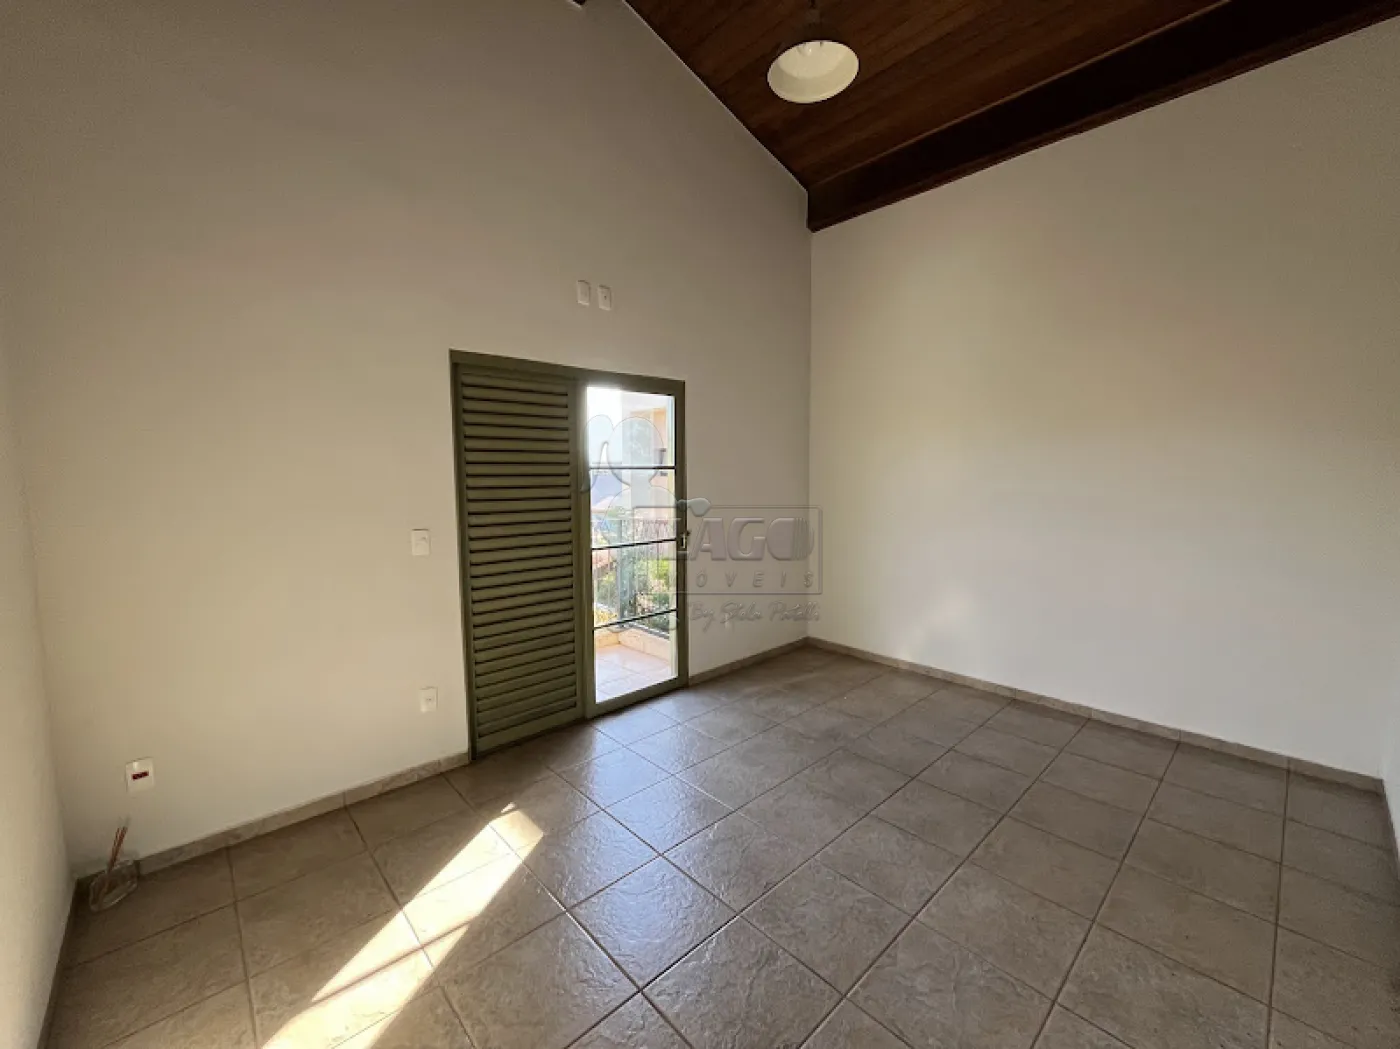 Comprar Casa condomínio / Padrão em Cravinhos R$ 1.130.000,00 - Foto 18